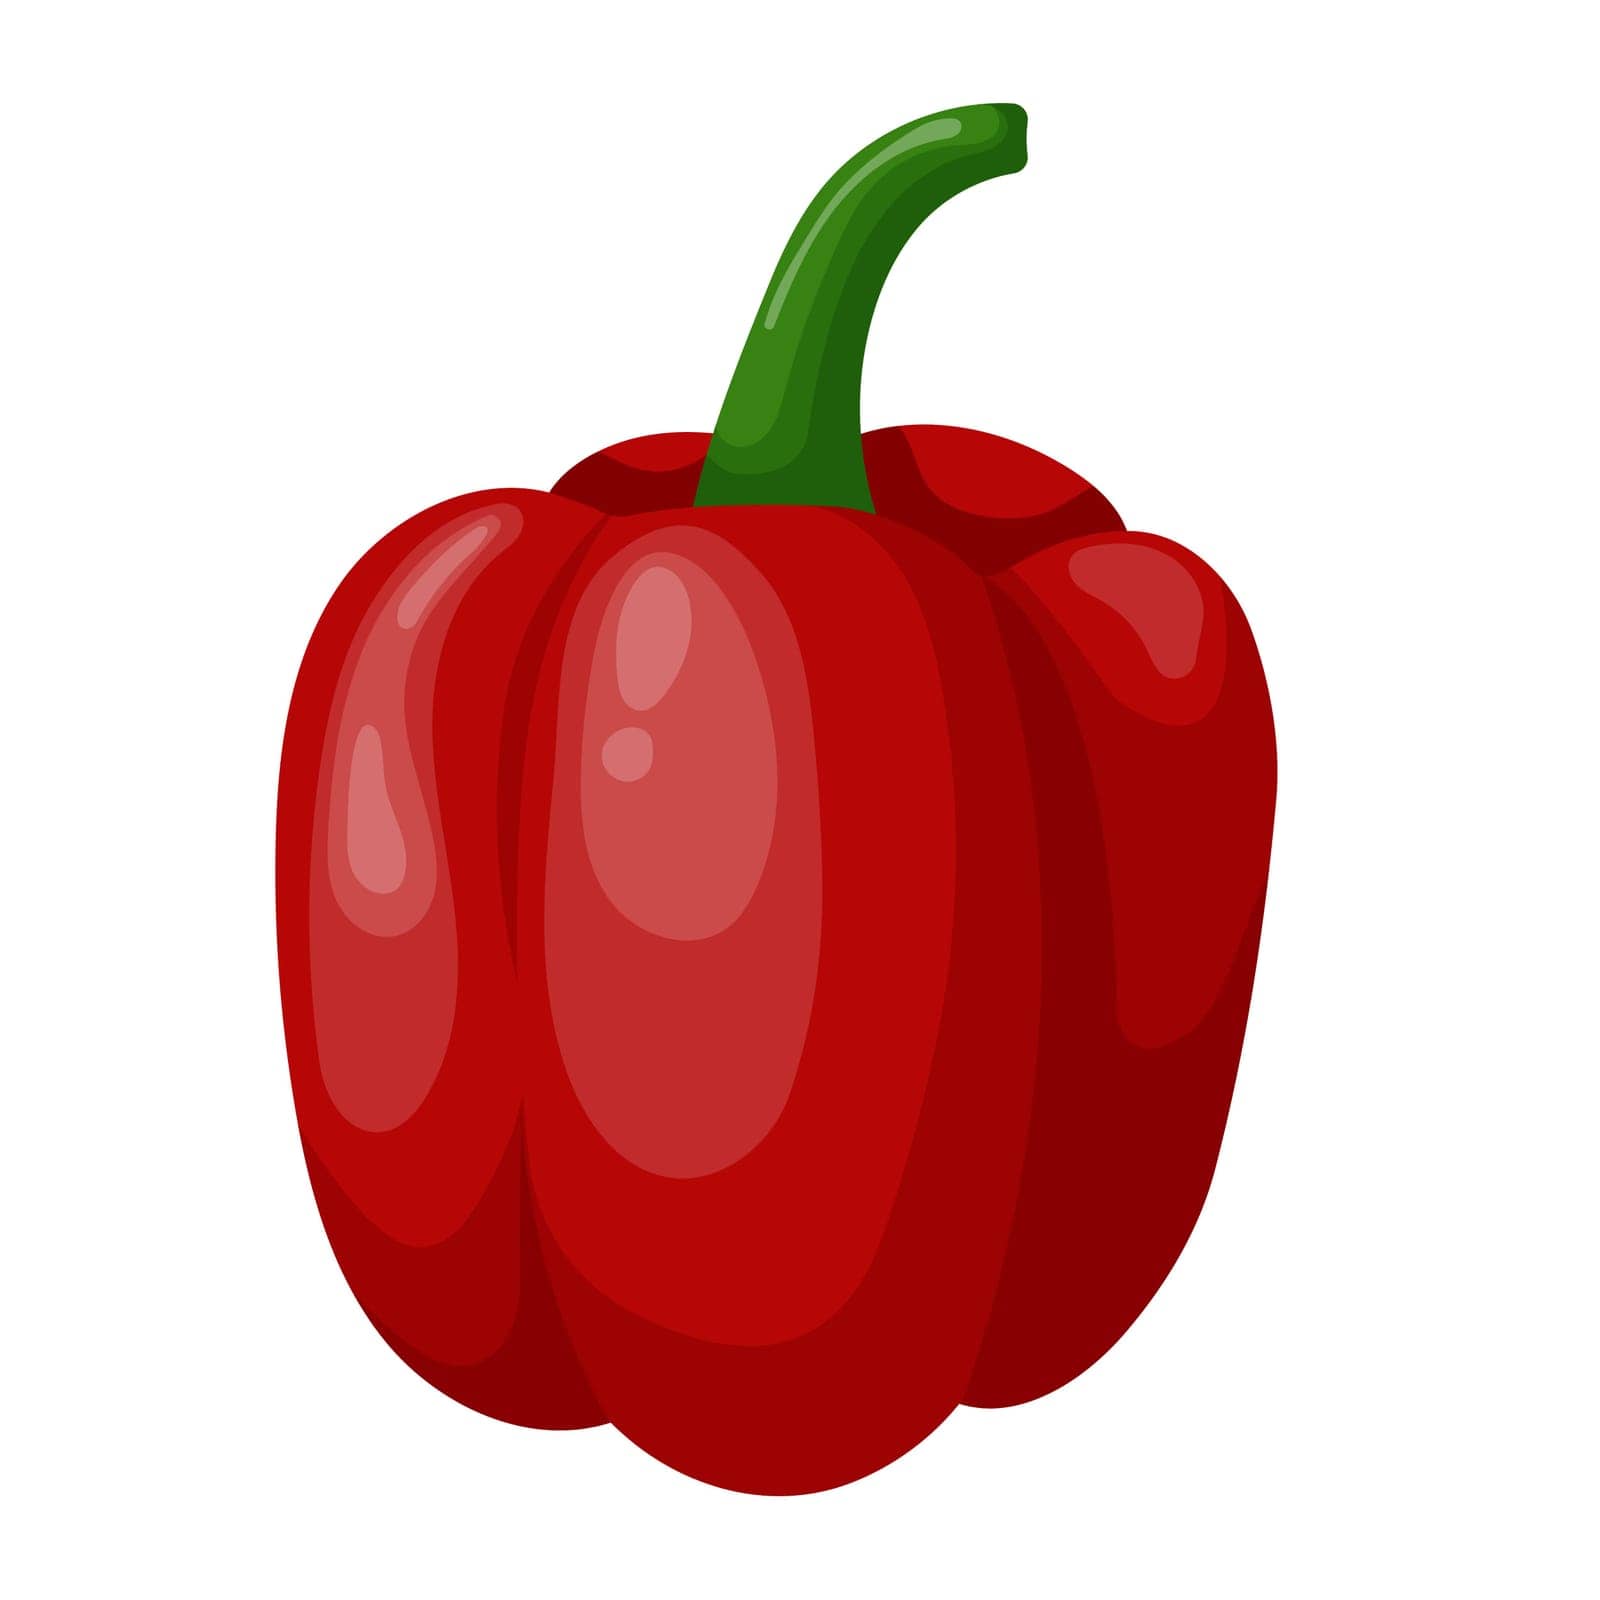 Bulgarian pepper isolated on a white background. Sweet red pepper, bell pepper. Vector illustration of pepper. by IrynaShautsova